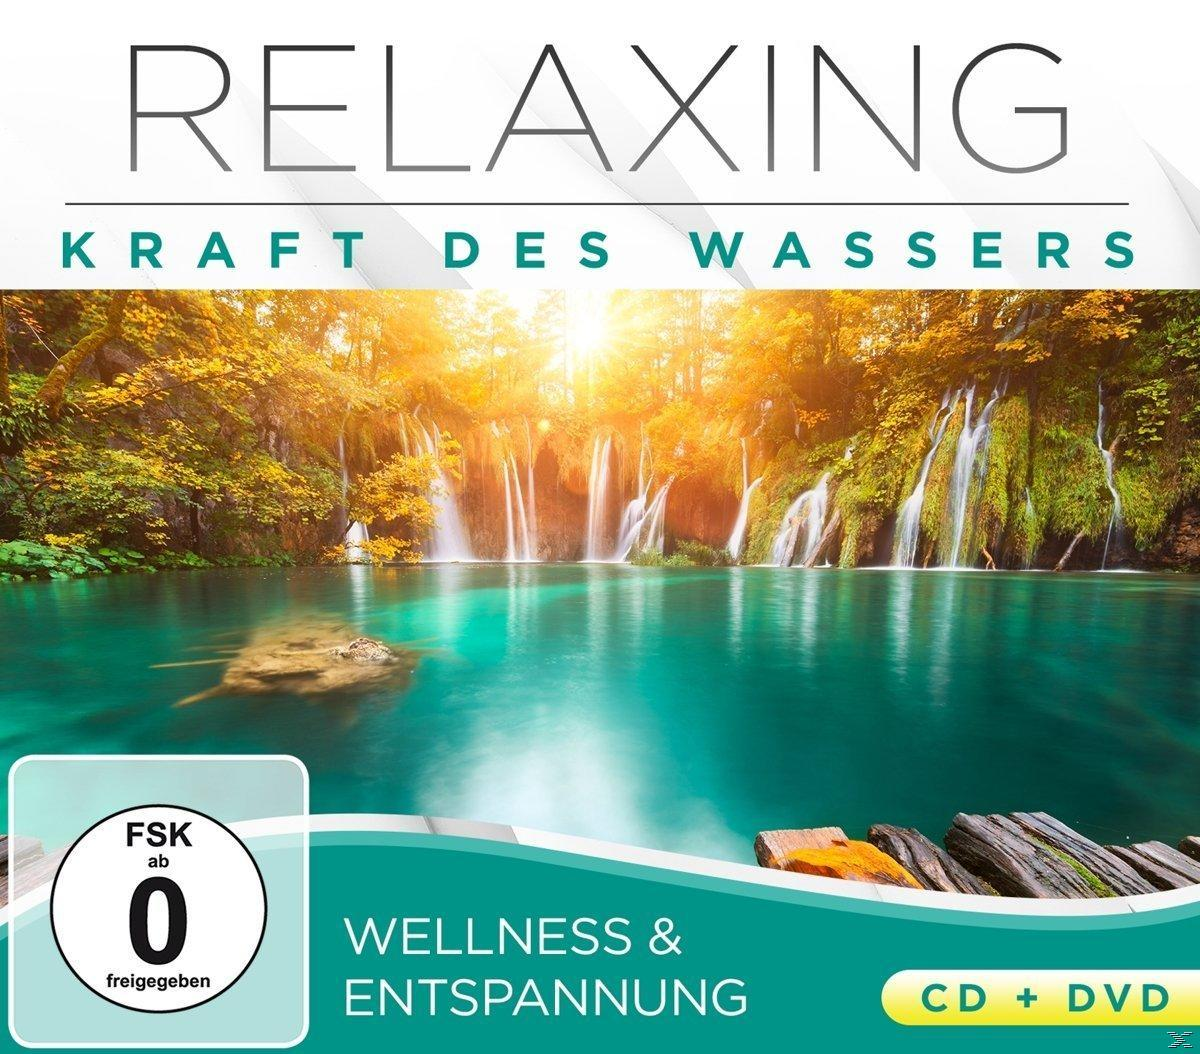 Relaxing - Kraft des CD Video & + Wassers DVD Entspannung Wellness 